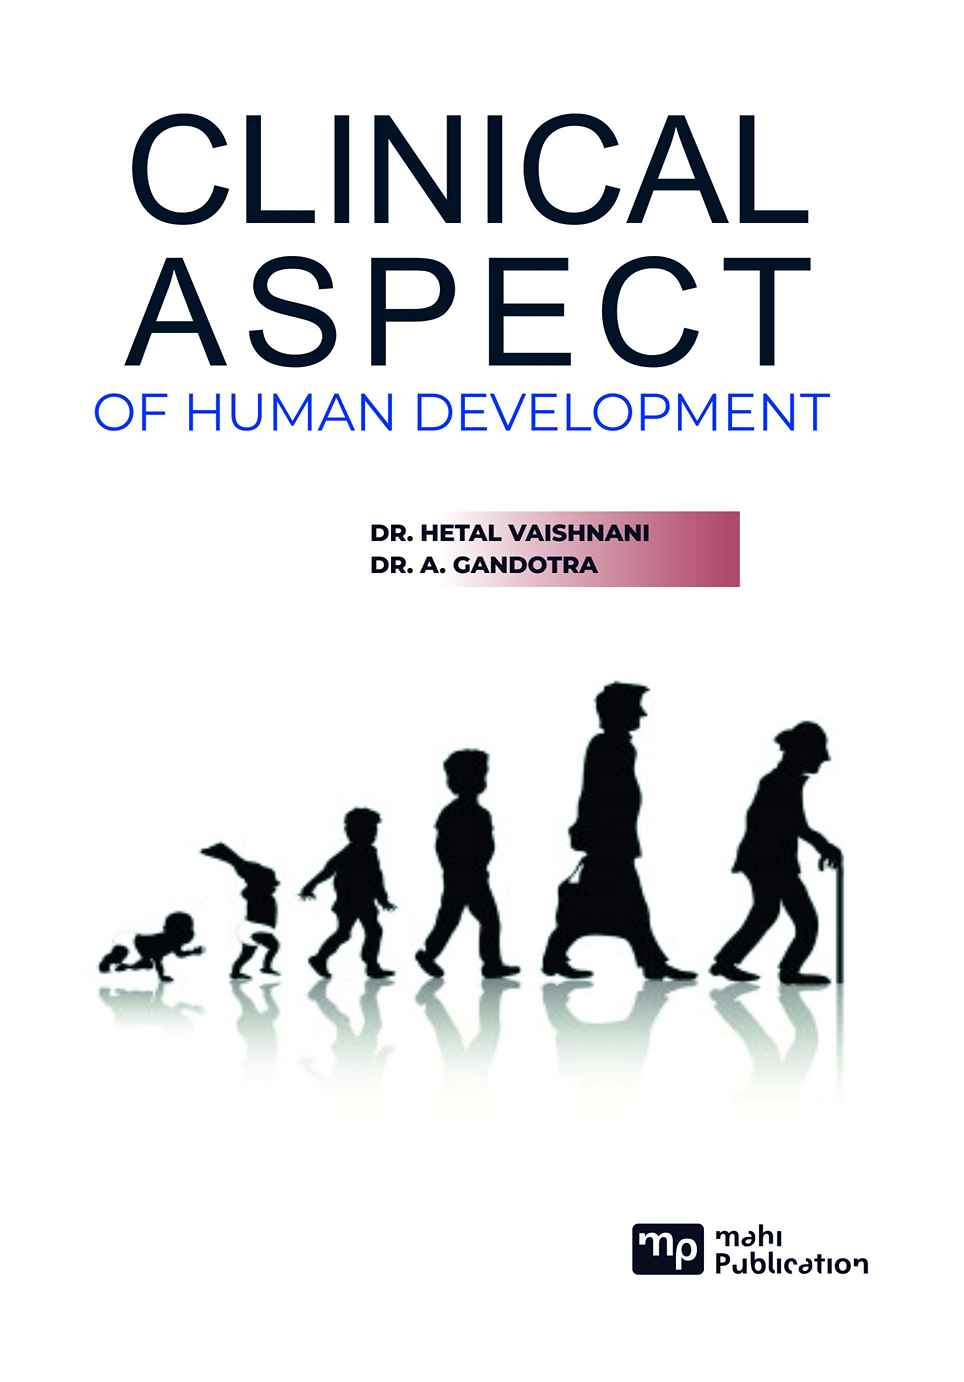 Clinical Aspect of Human Development